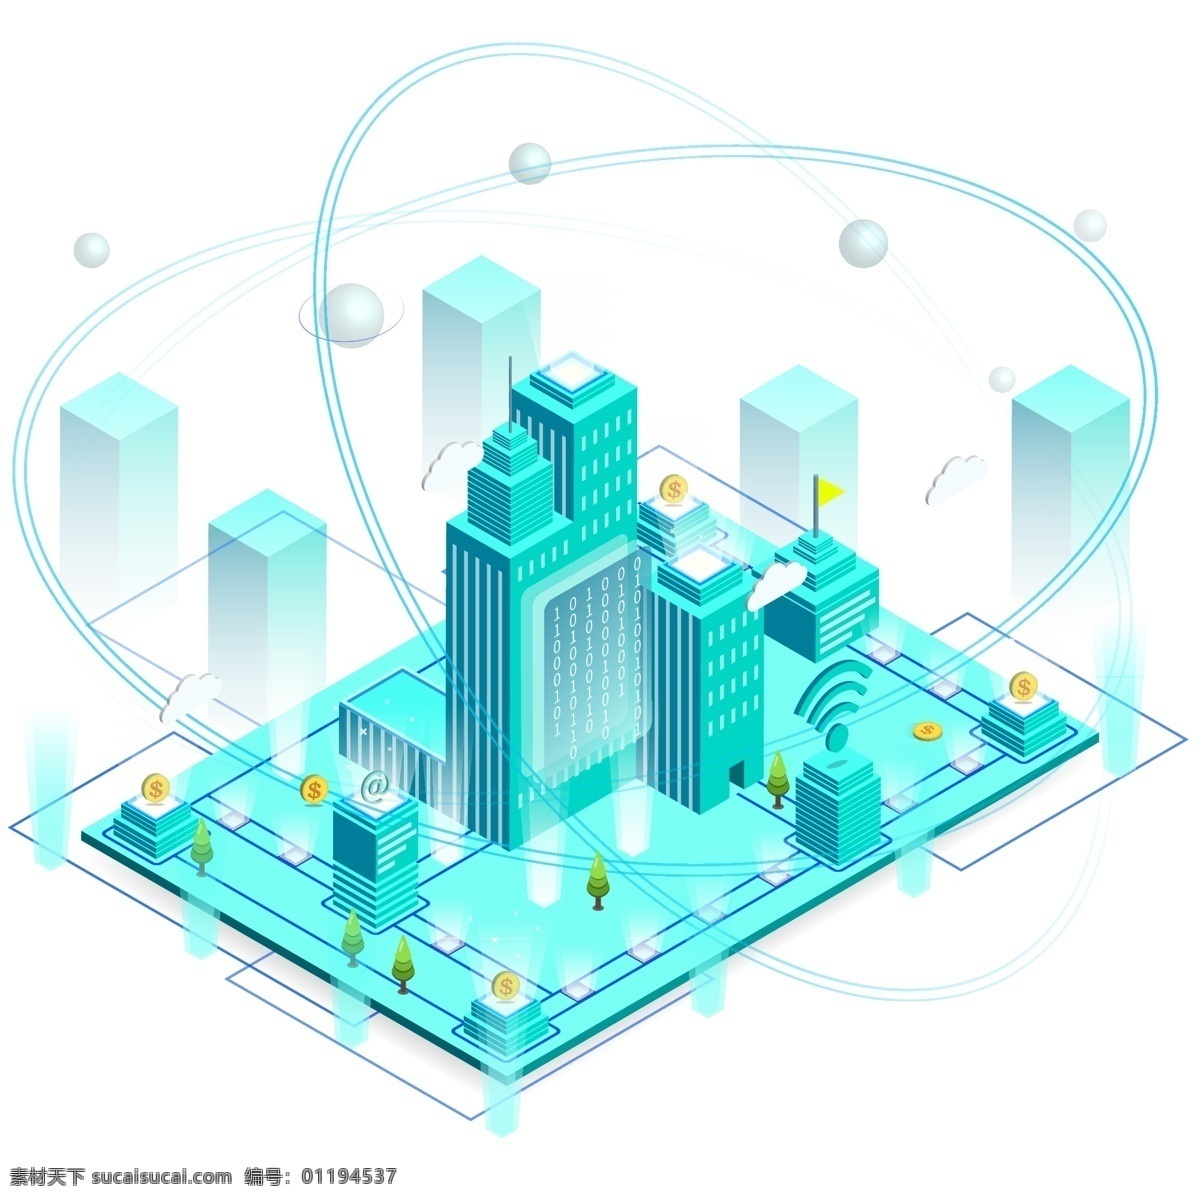 d 科技 互联网 城市 建筑 信号 大 数据中心 数据 wifi 2.5d 原创 科技城市 大数据 信息 智慧城市 未来城市 智能城市 管网 管道 信息传递 资源输送 插画元素